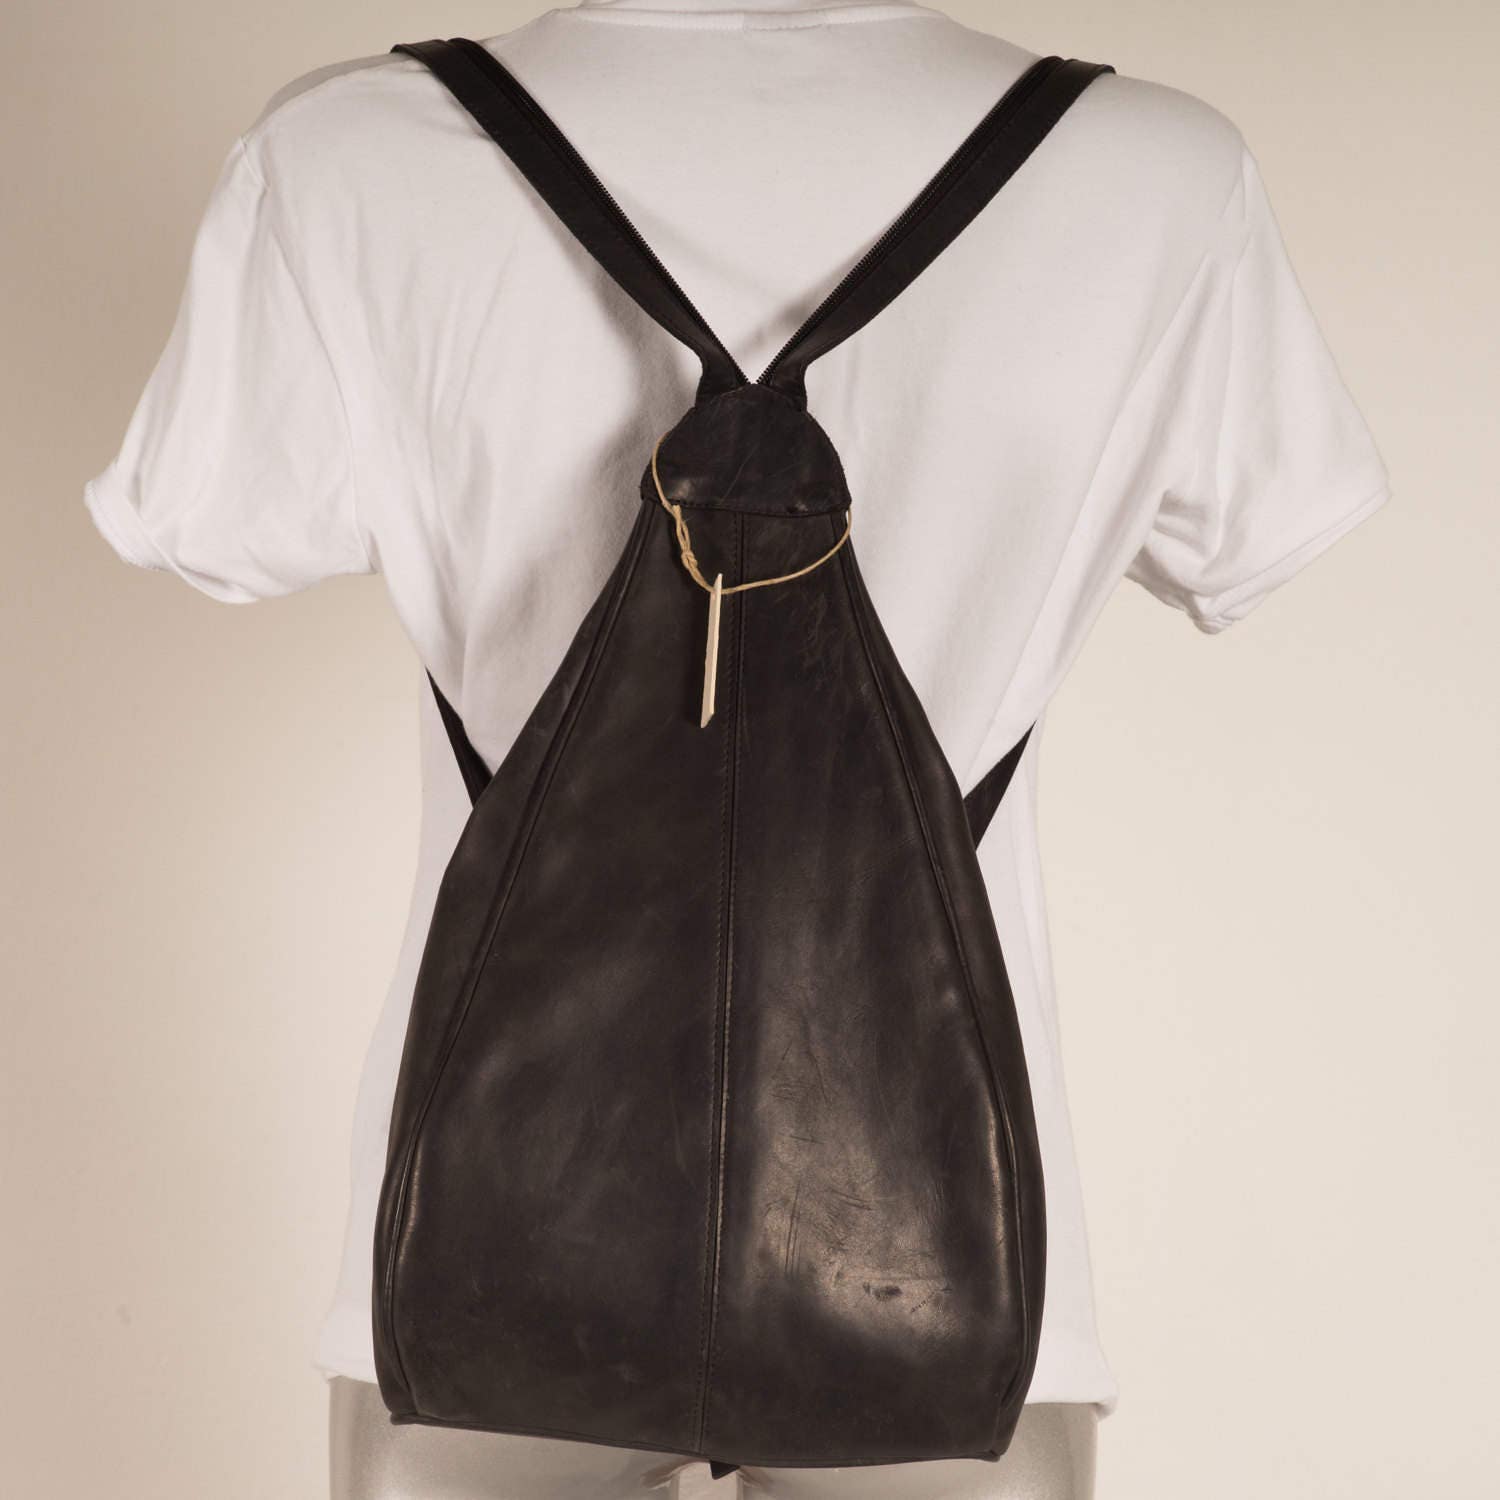 Francoise Backpack Black Leather Bag Vintage Bag Handmade 